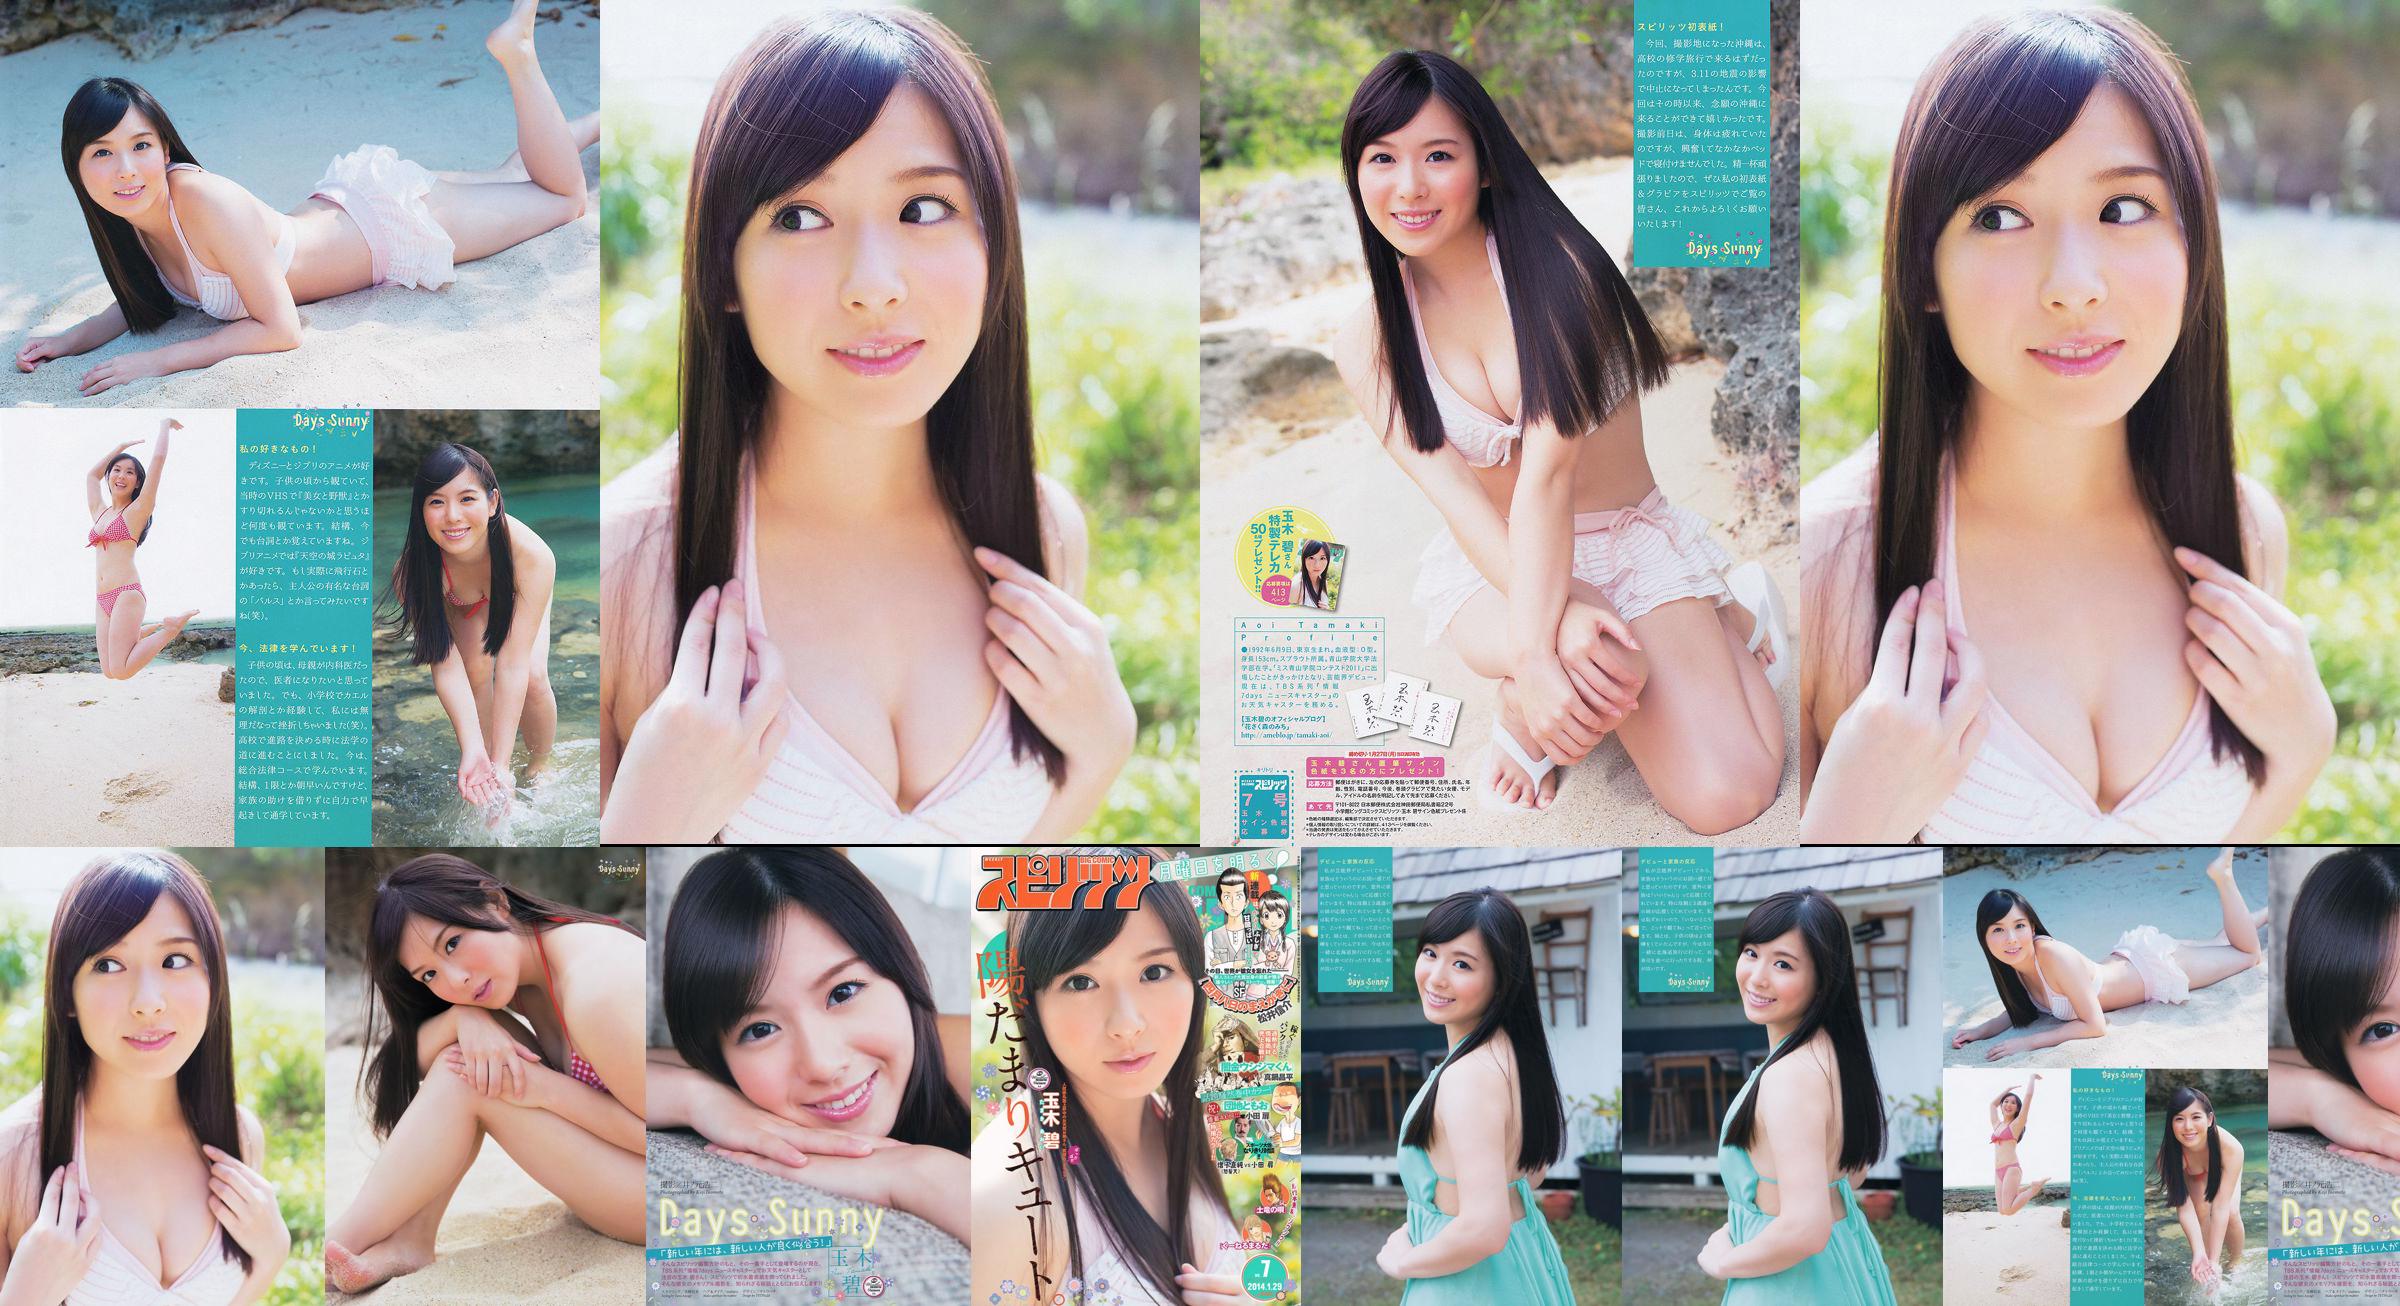 [Wöchentliche große Comic-Geister] Tamakibi 2014 No.07 Photo Magazine No.dd2922 Seite 1